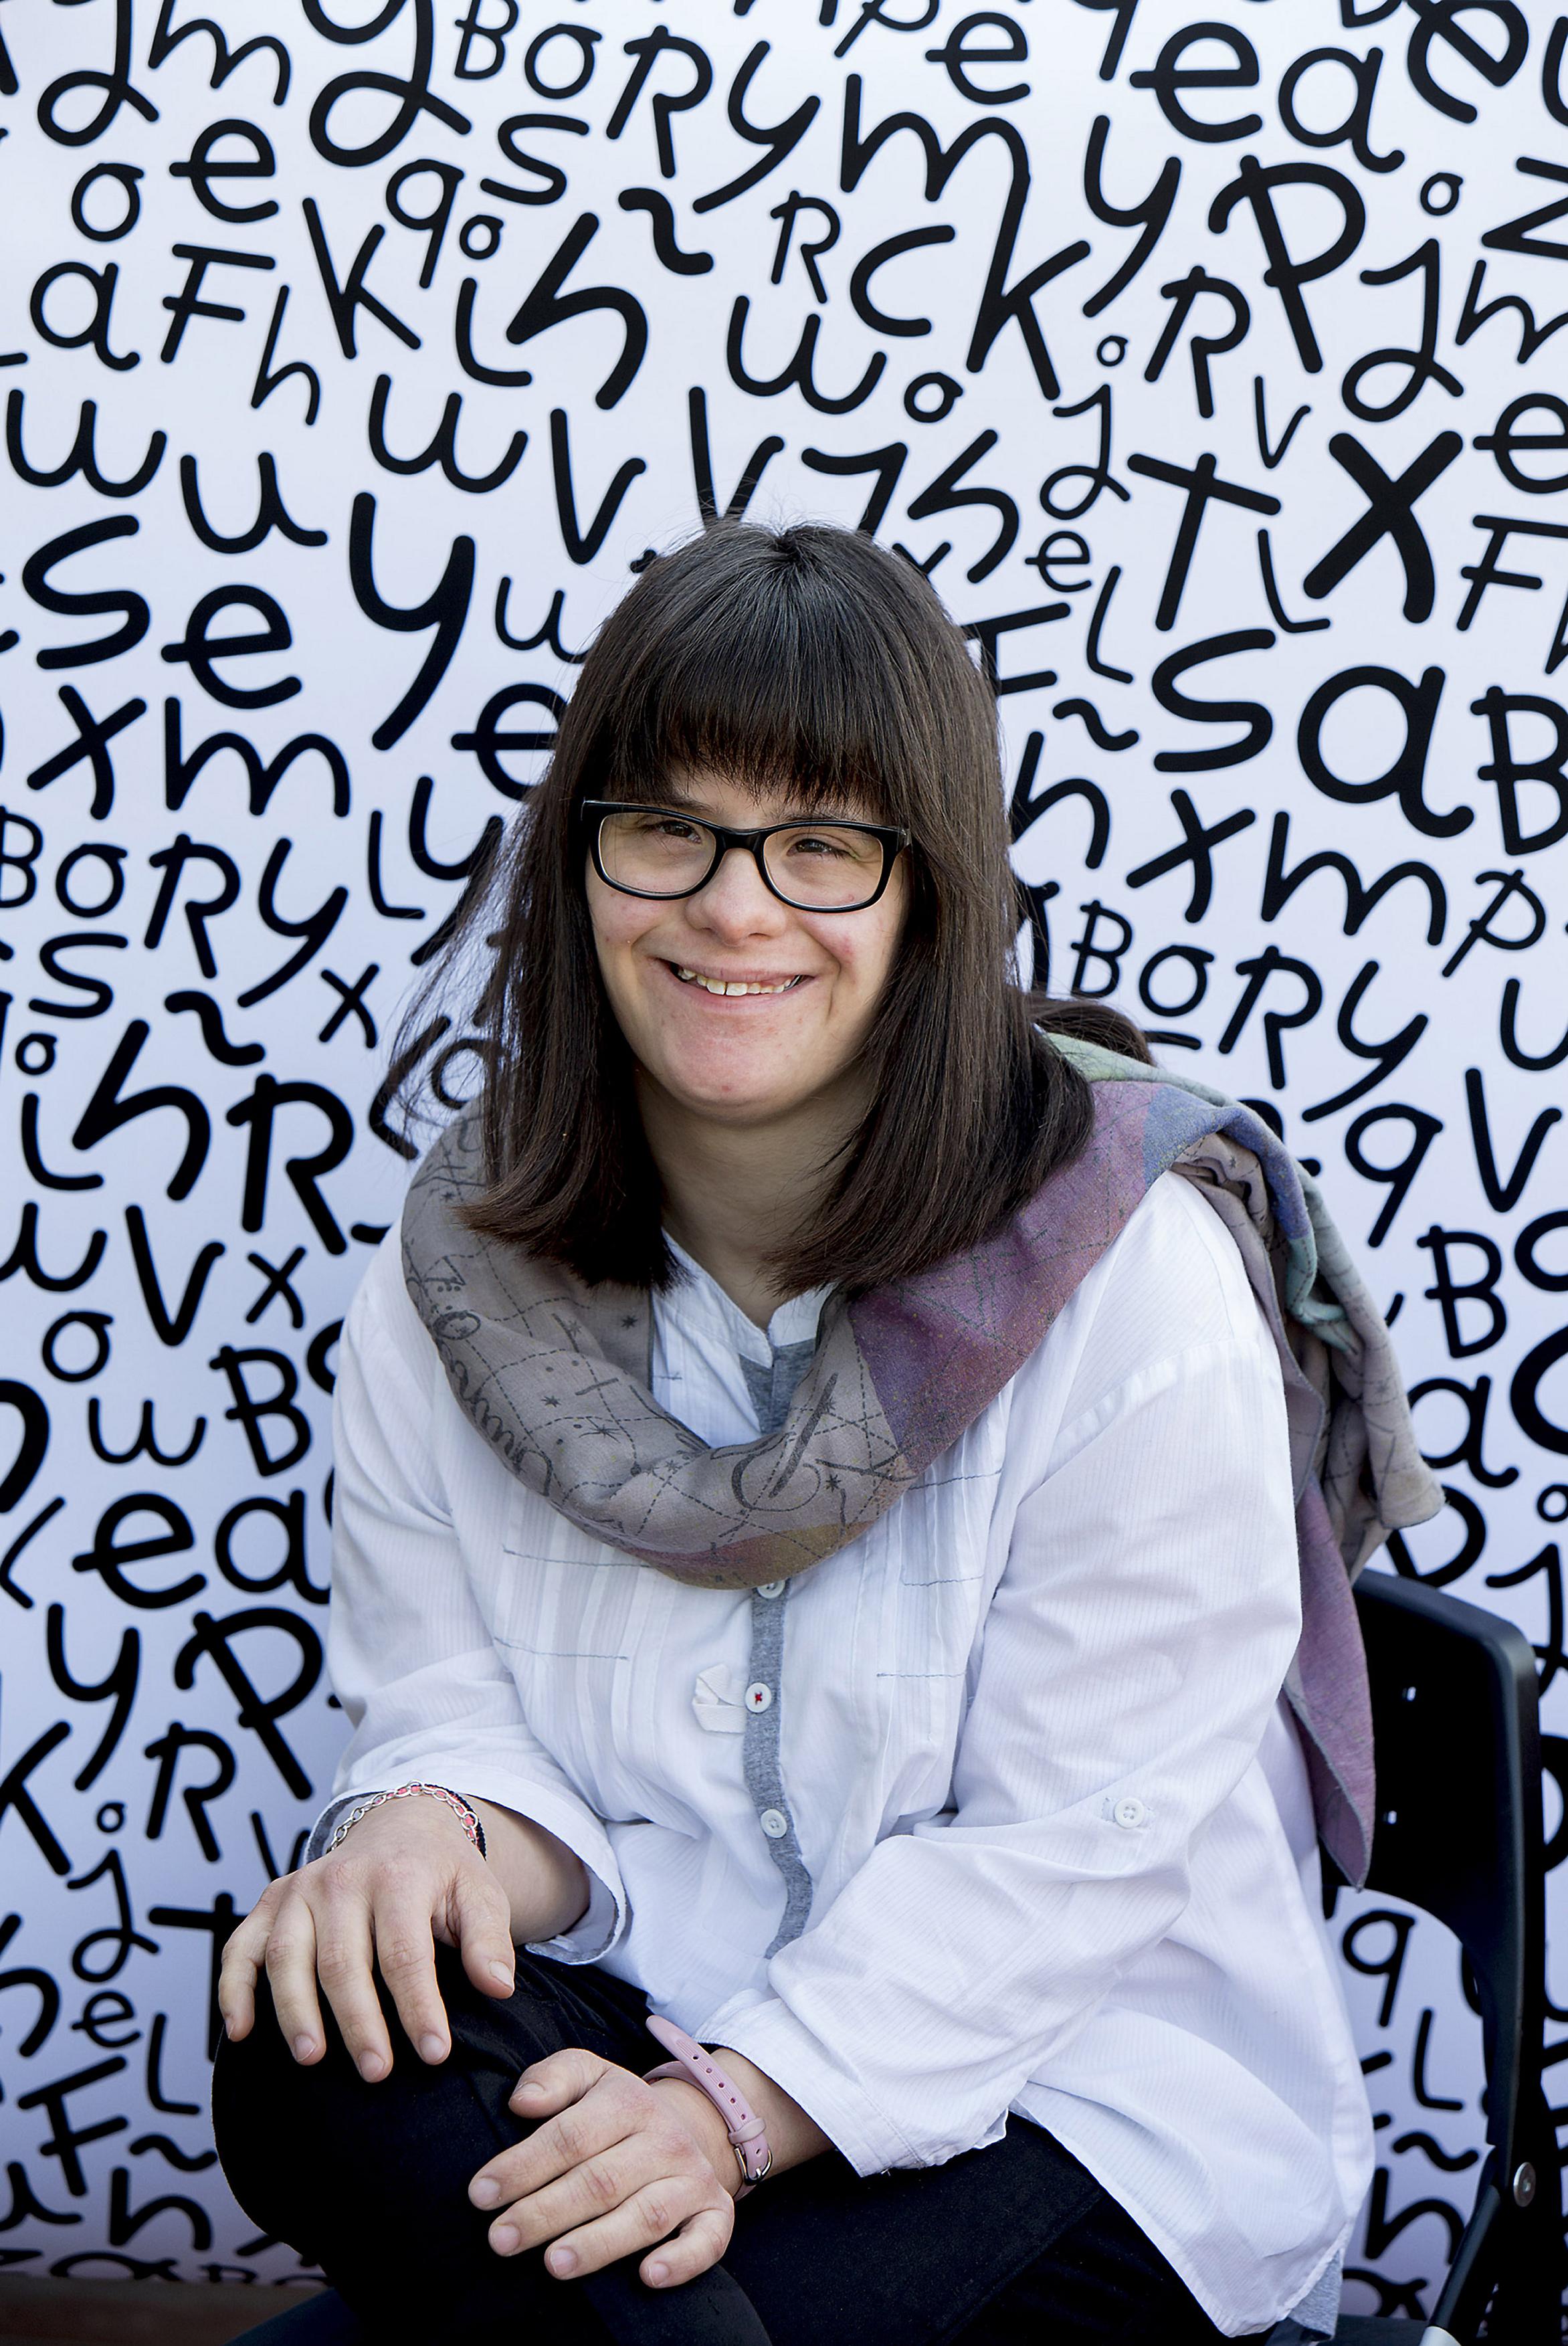 Anna Vives posa con la tipografía que ha creado de fondo.